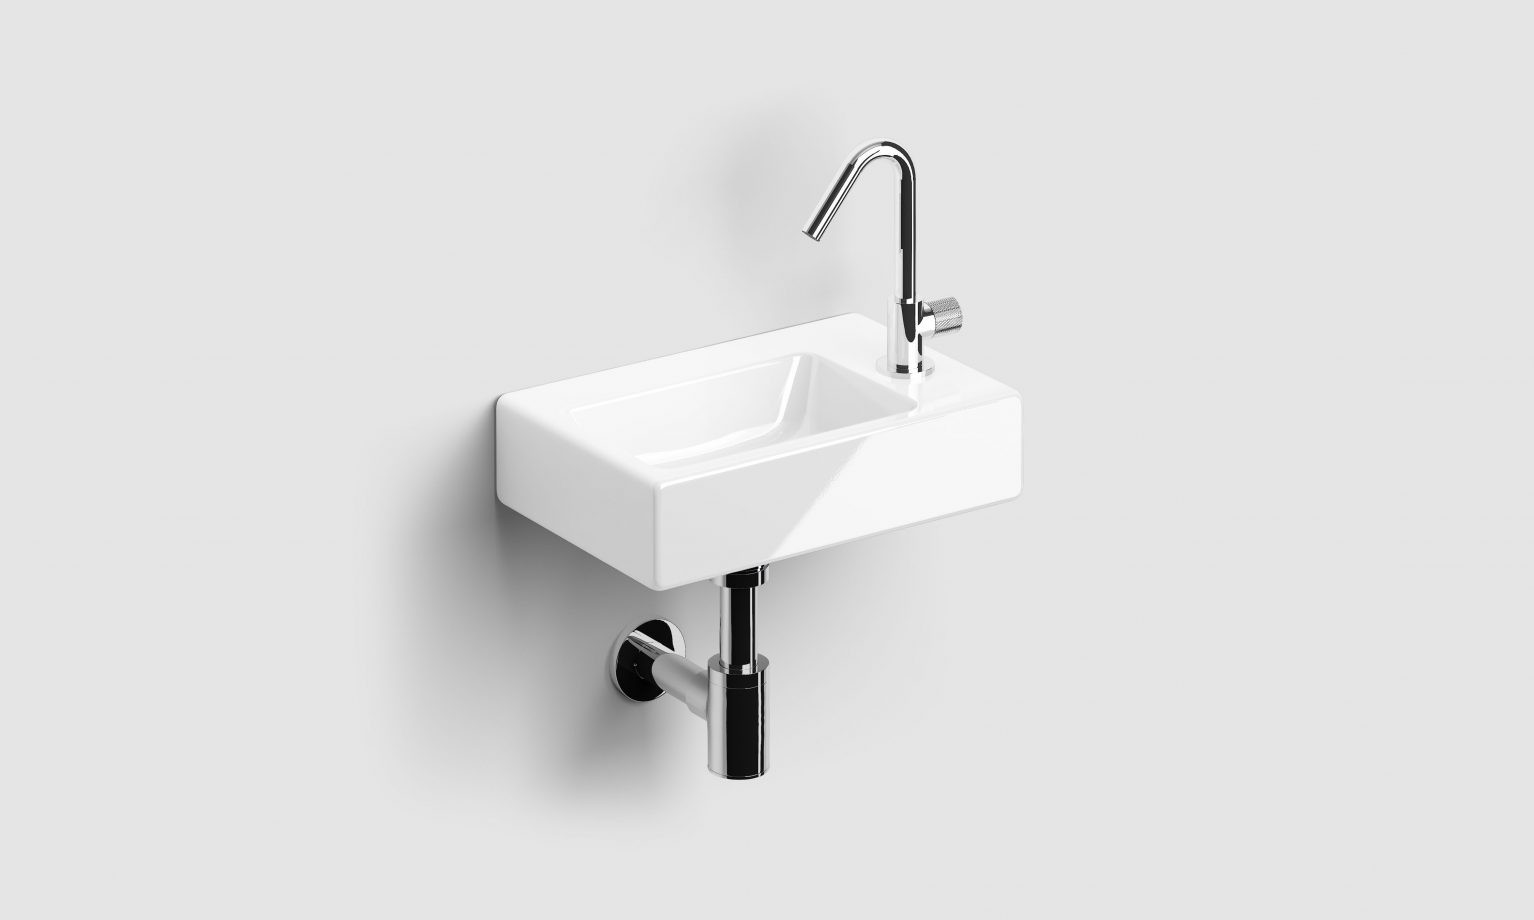 koud-water-kraan-fontein-glanzend-chroom-wit-kartel-handvat-met-draaibare-uitloop-toilet-badkamer-luxe-sanitair-InBe-Flush-clou-IB0603002